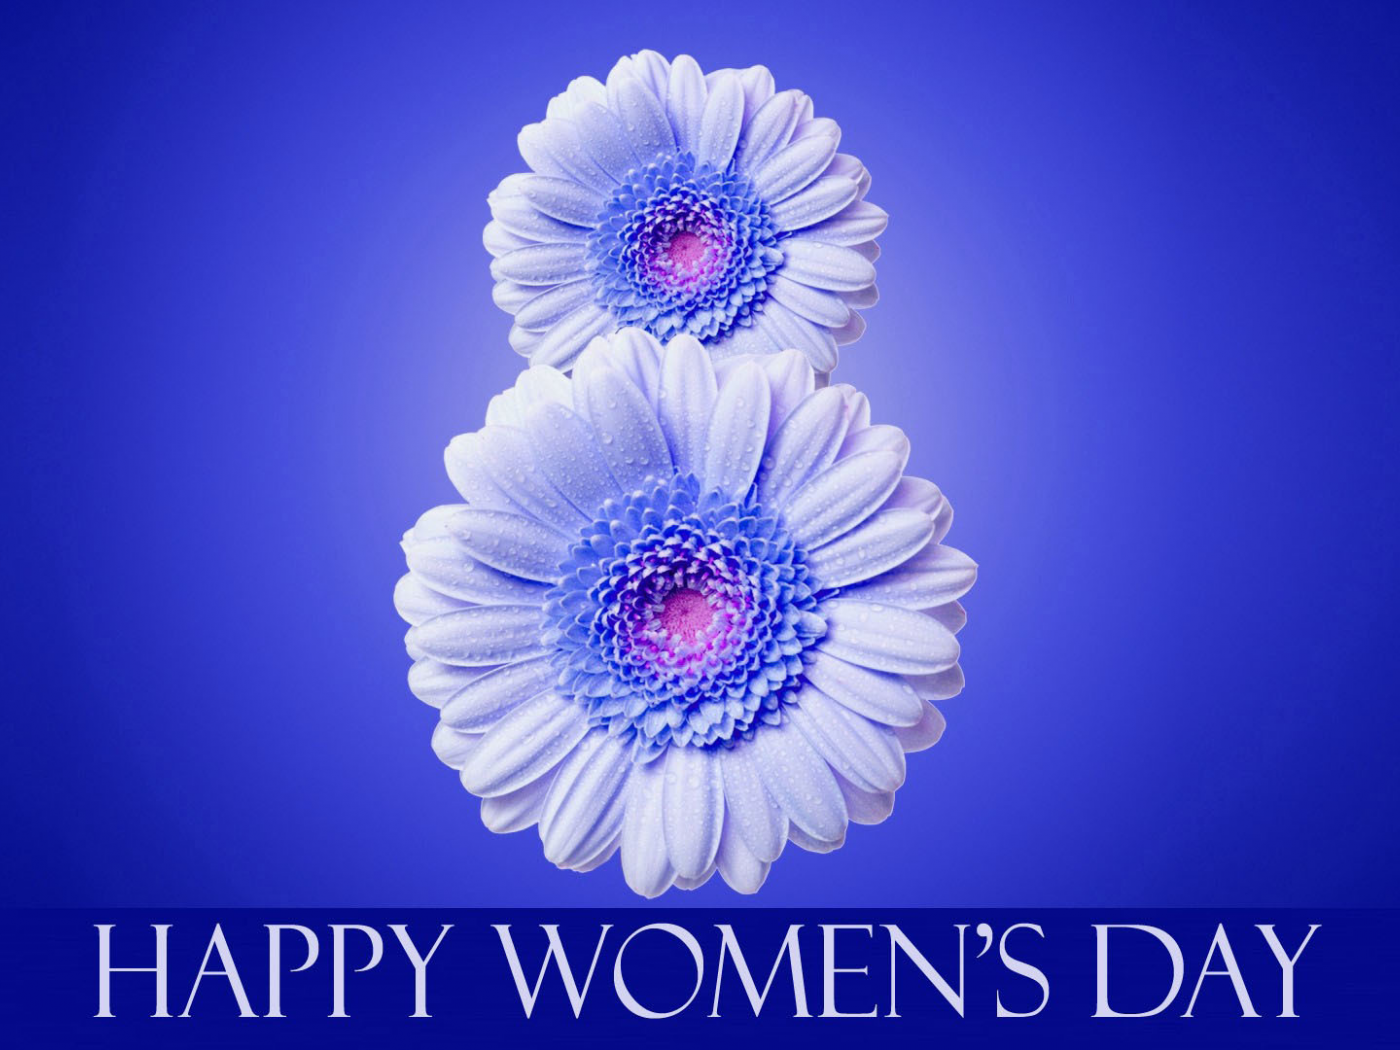  международный женский день, 8 марта, надпись, цветы